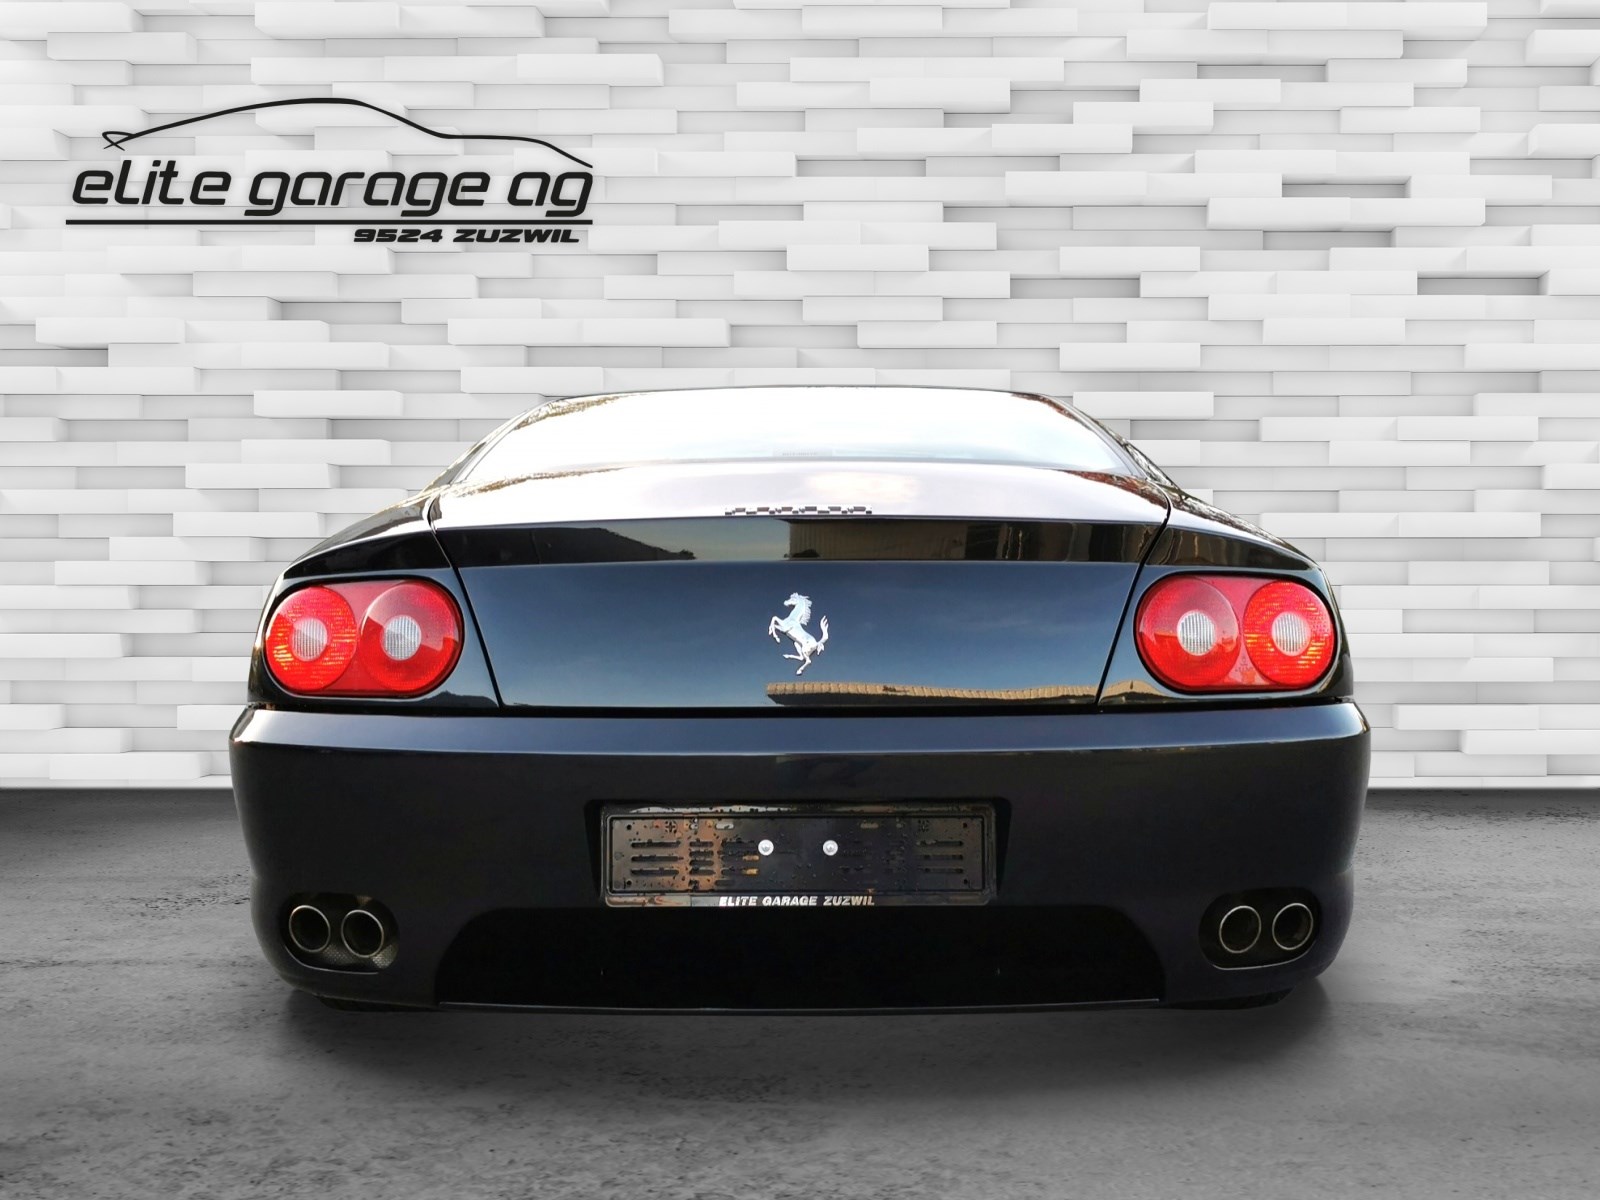 Premium Vollgarage Autoabdeckung für Ferrari 456 GTA Auto Garage